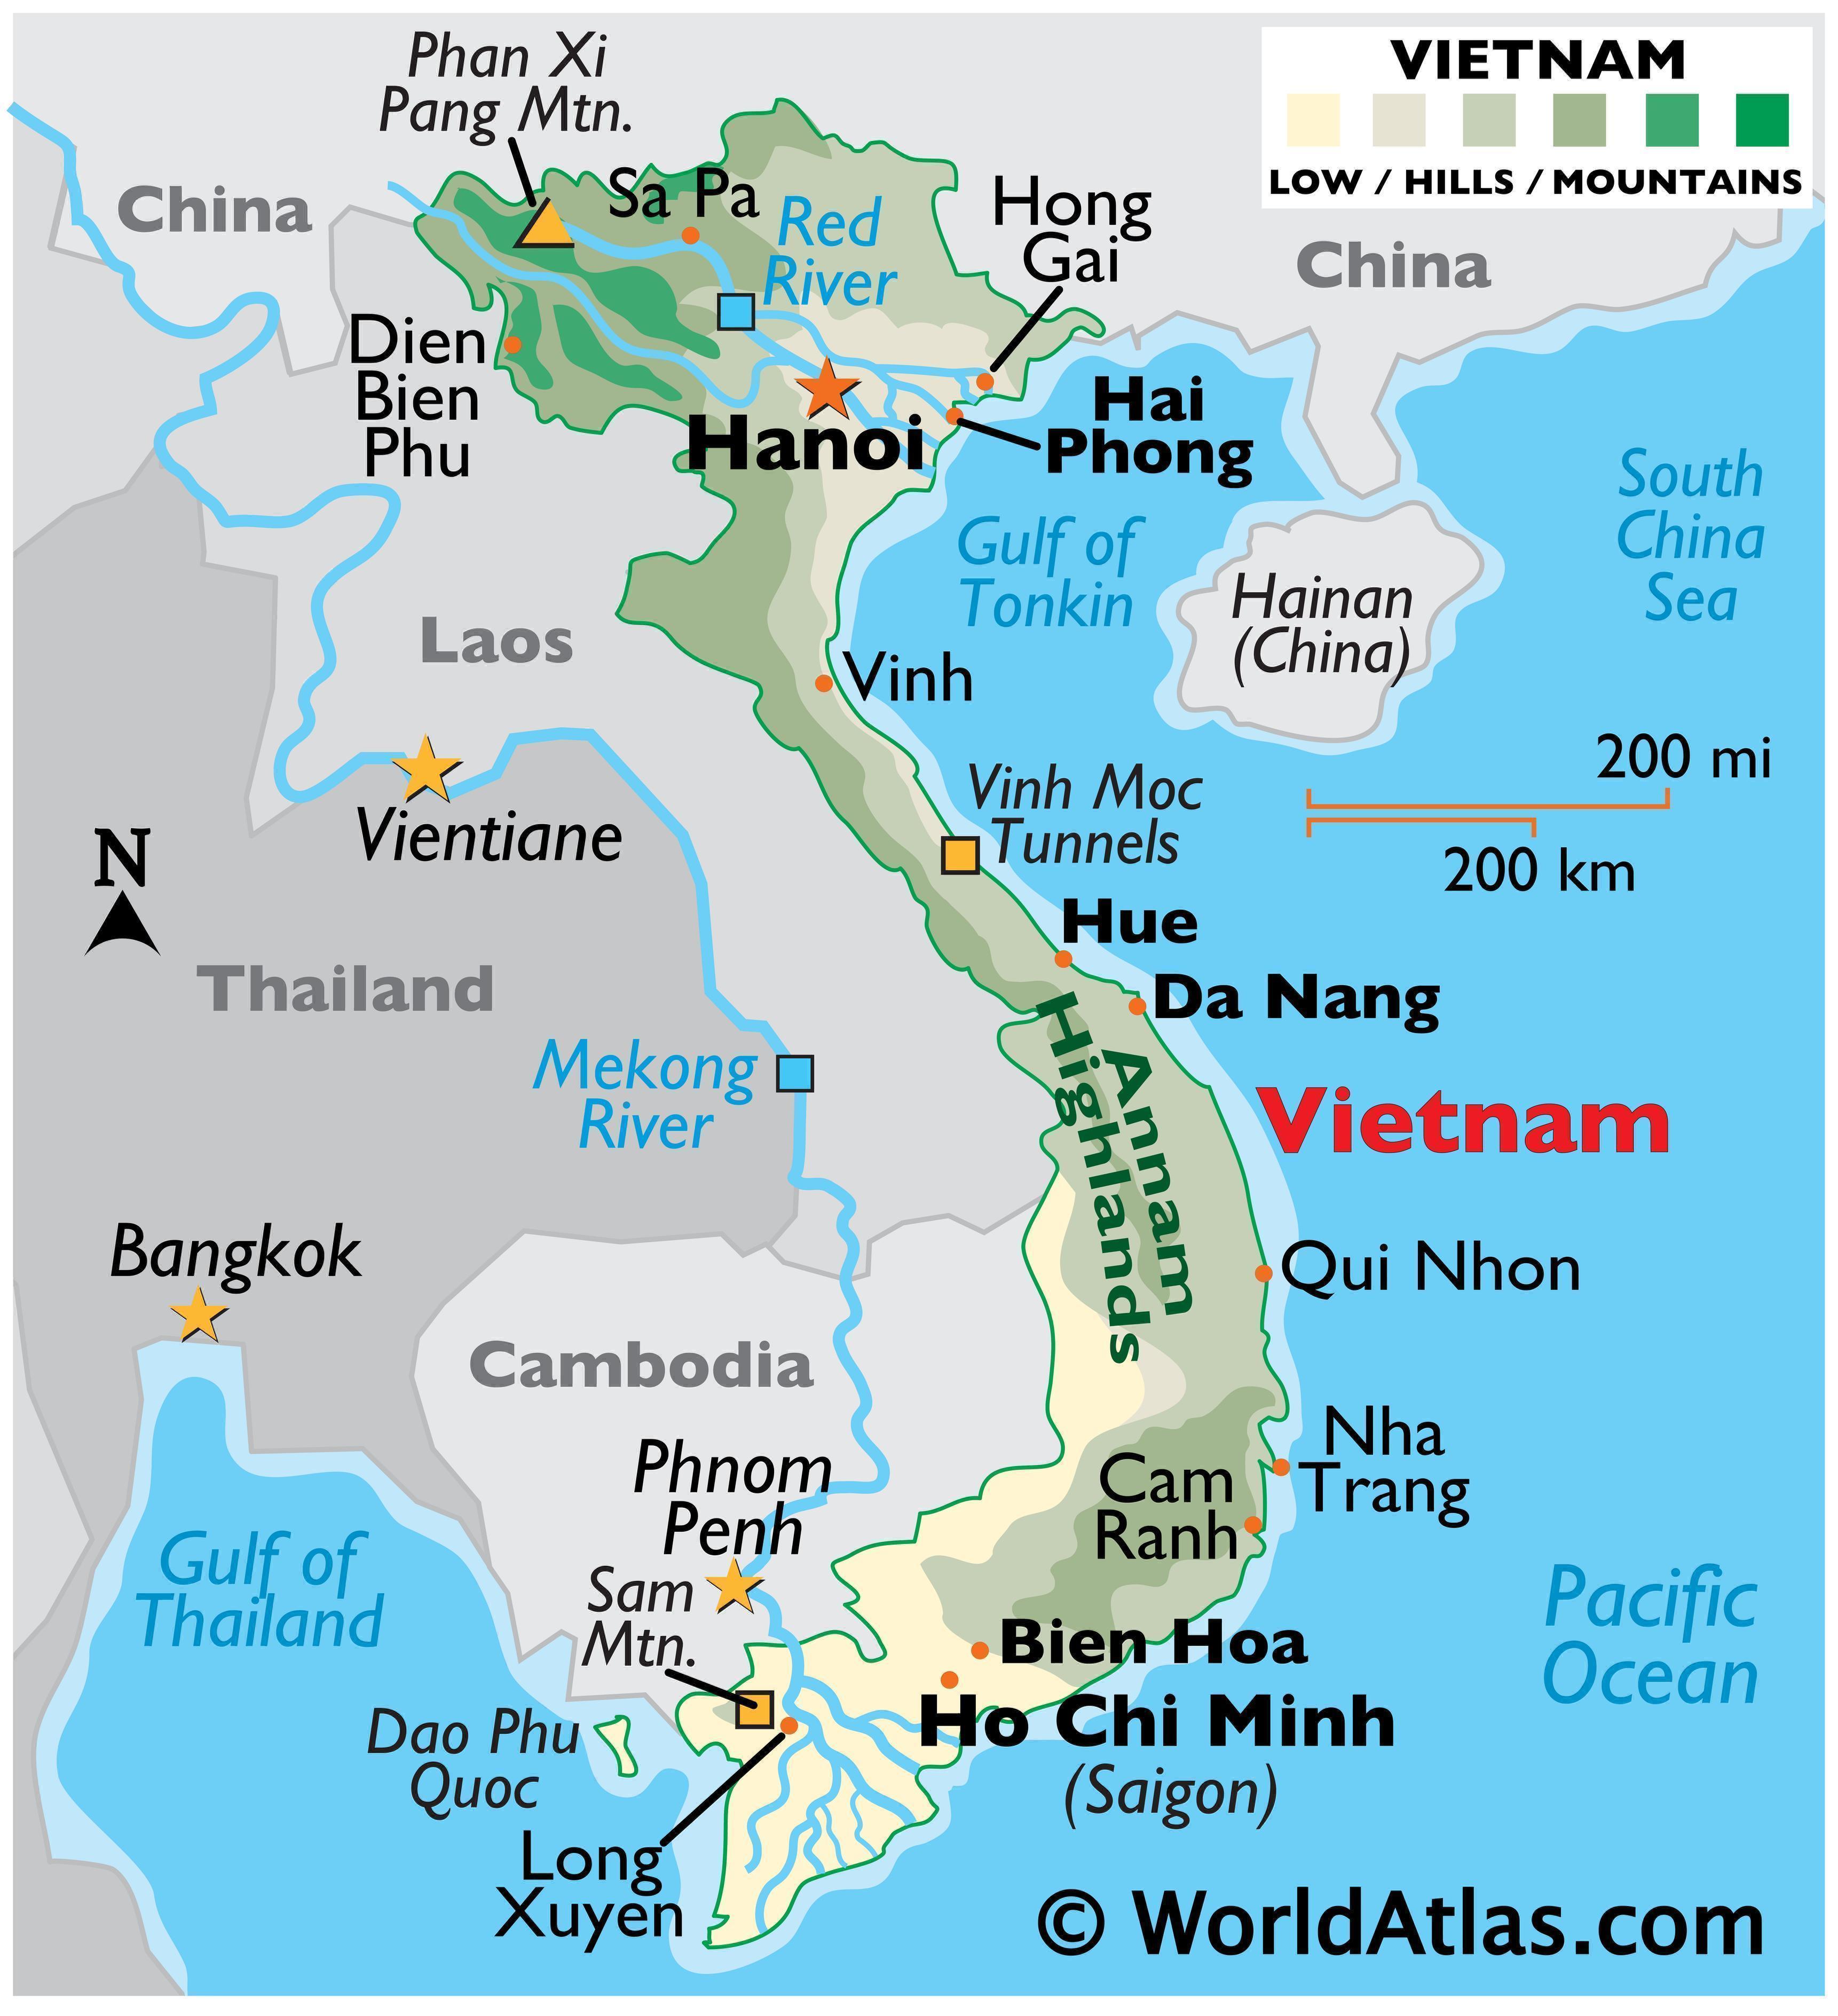 Bản đồ du lịch Hà Giang 2024 sẽ làm cho chuyến đi của bạn thêm phần thú vị và hấp dẫn hơn bao giờ hết. Khám phá những cảnh đẹp hoang sơ, ngắm nhìn những dãy núi đá xanh ngút trời và trải nghiệm đồng bào các dân tộc đặc trưng của địa phương.